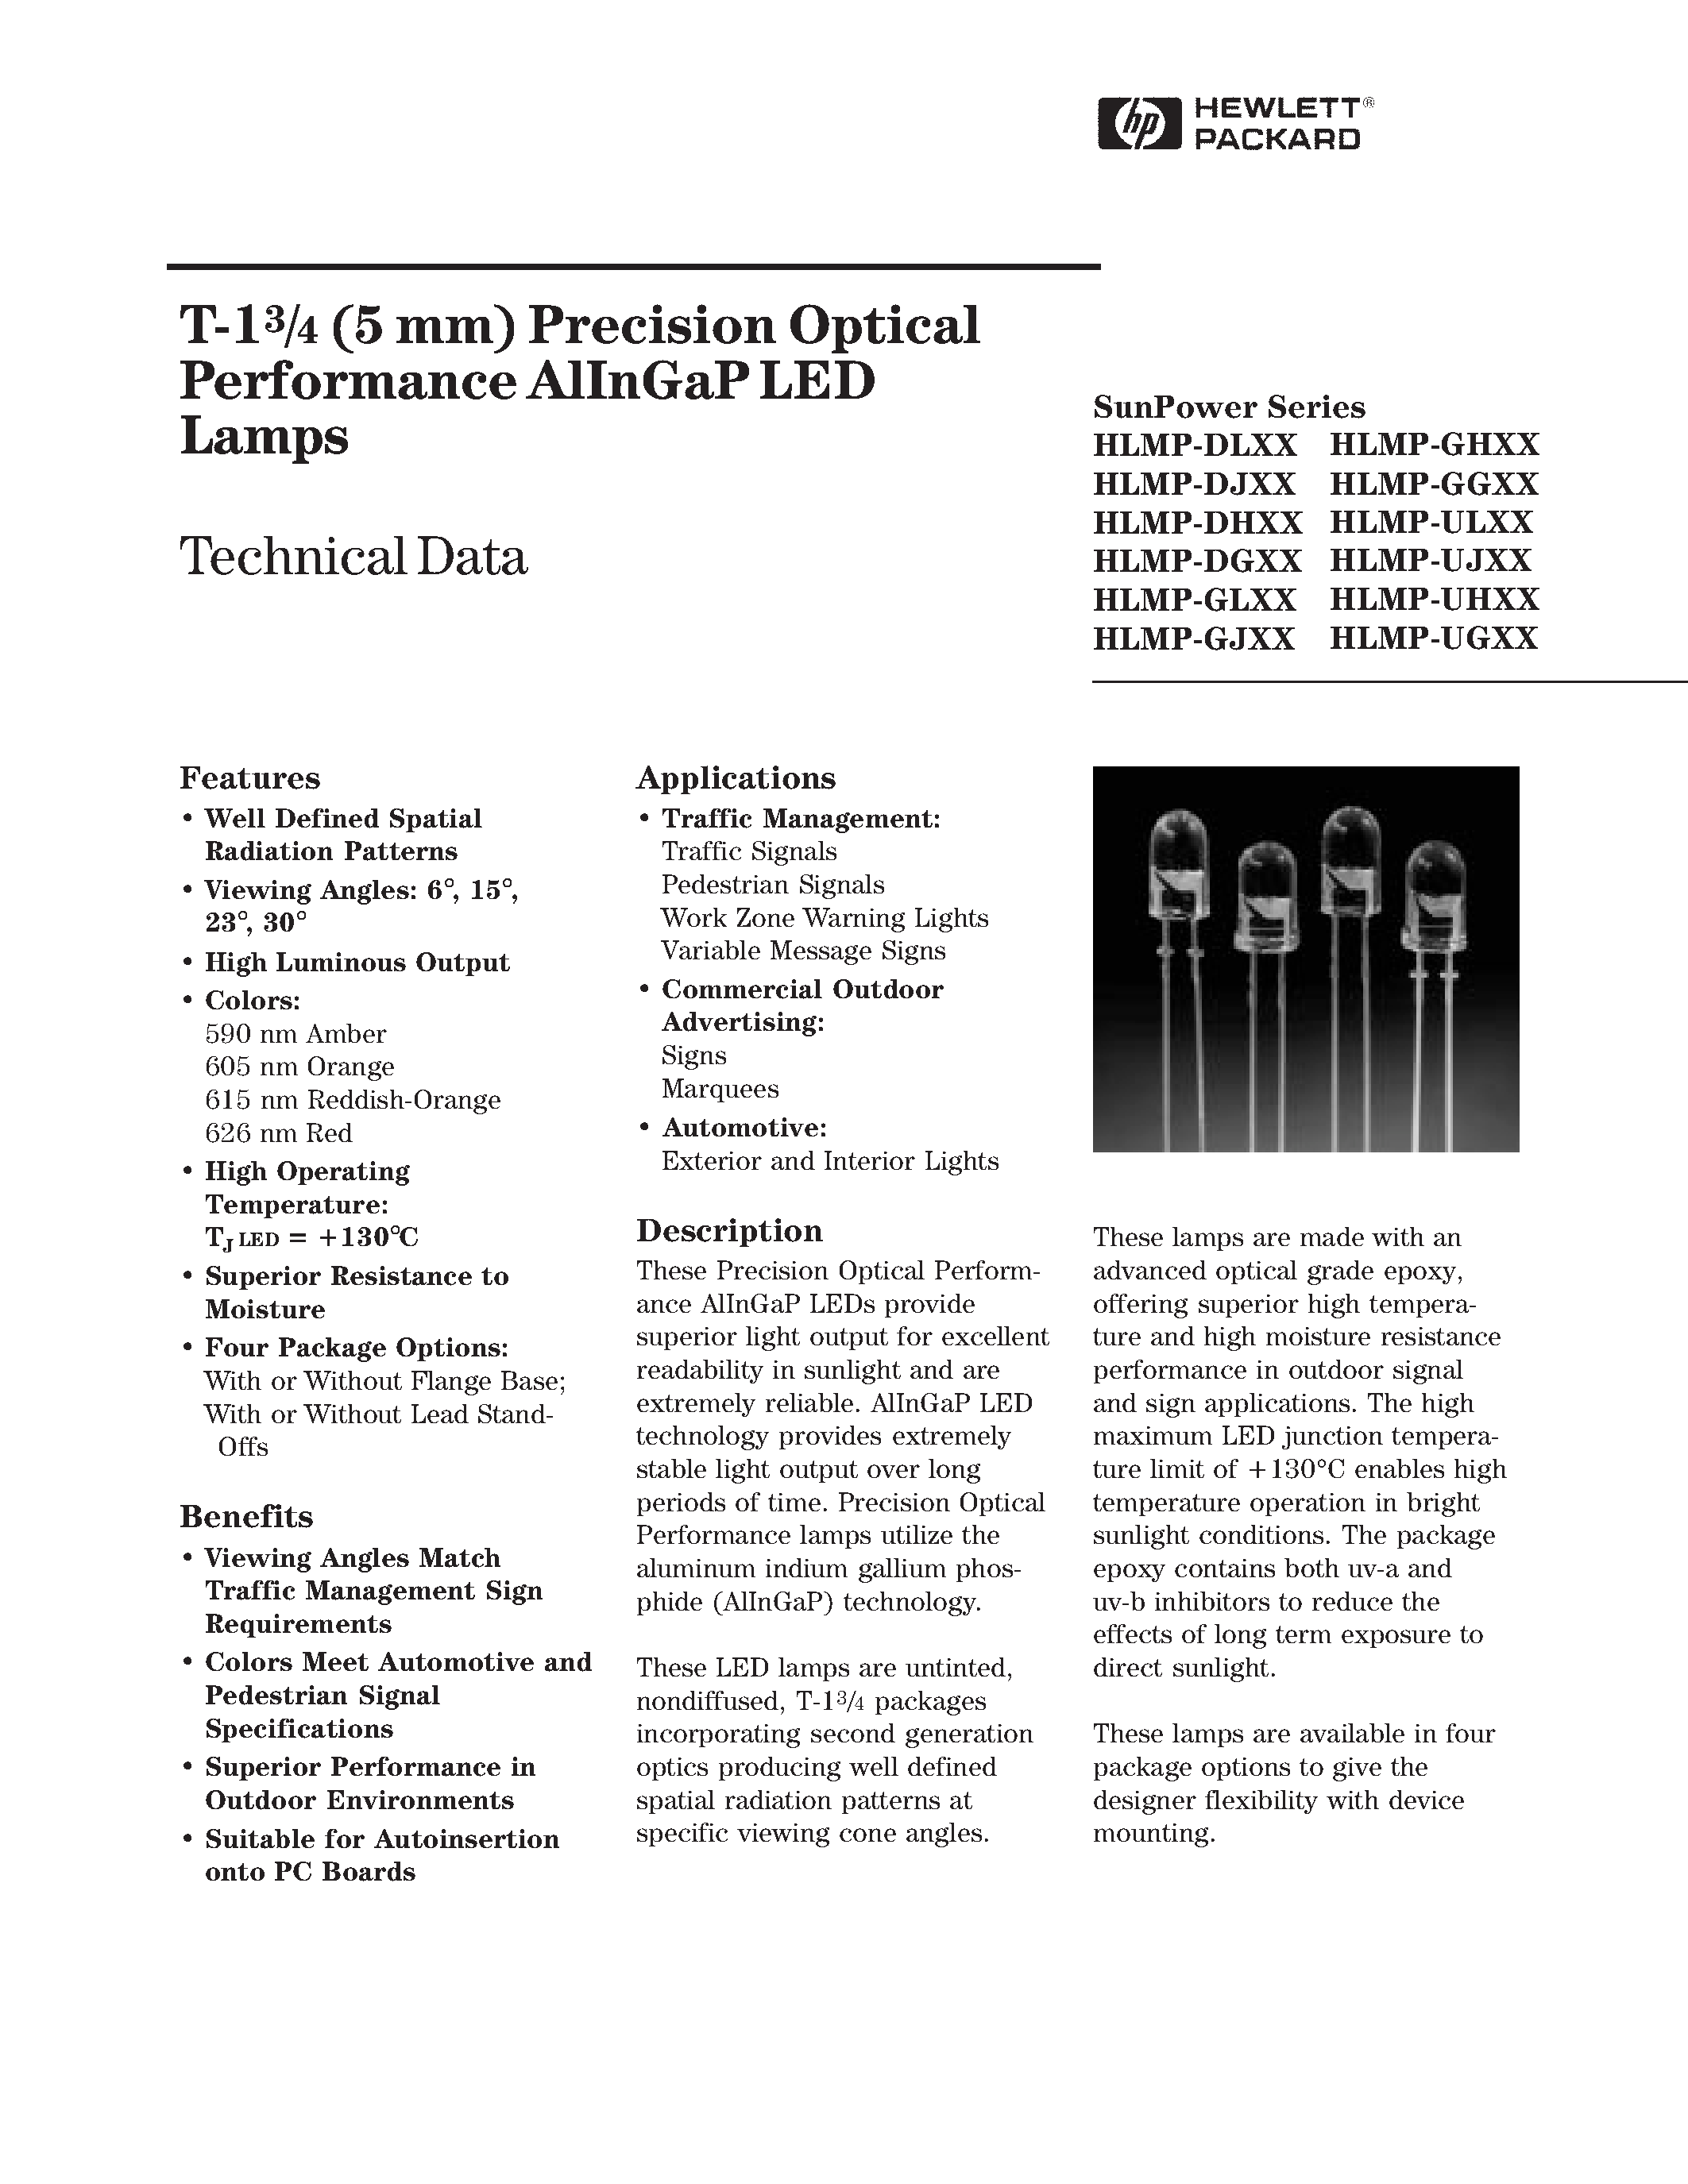 Даташит HLMP-ULXX - T-13/4 (5 mm) Precision Optical Performance AlInGaP LED Lamps страница 1